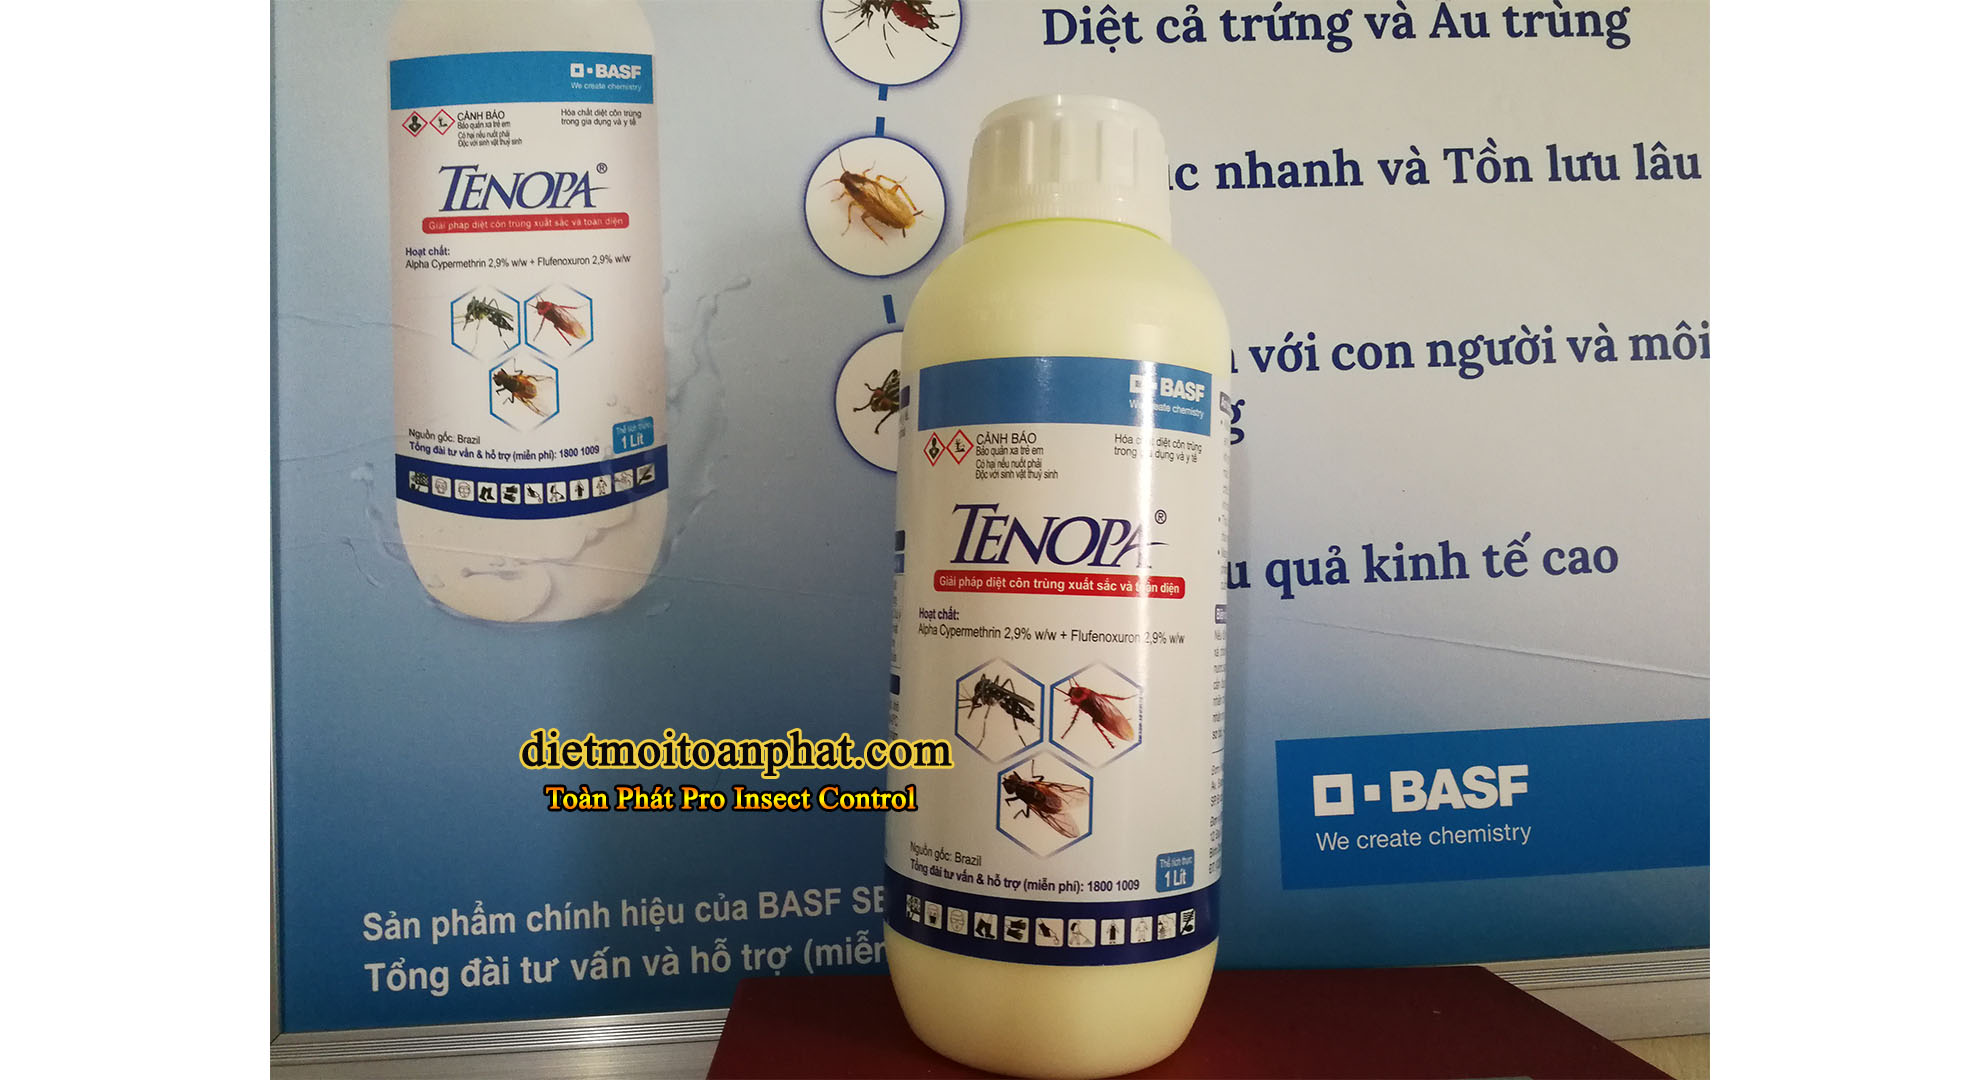 Thuốc diệt côn trùng TENOPA ® – Hãng BASF BRAZIL